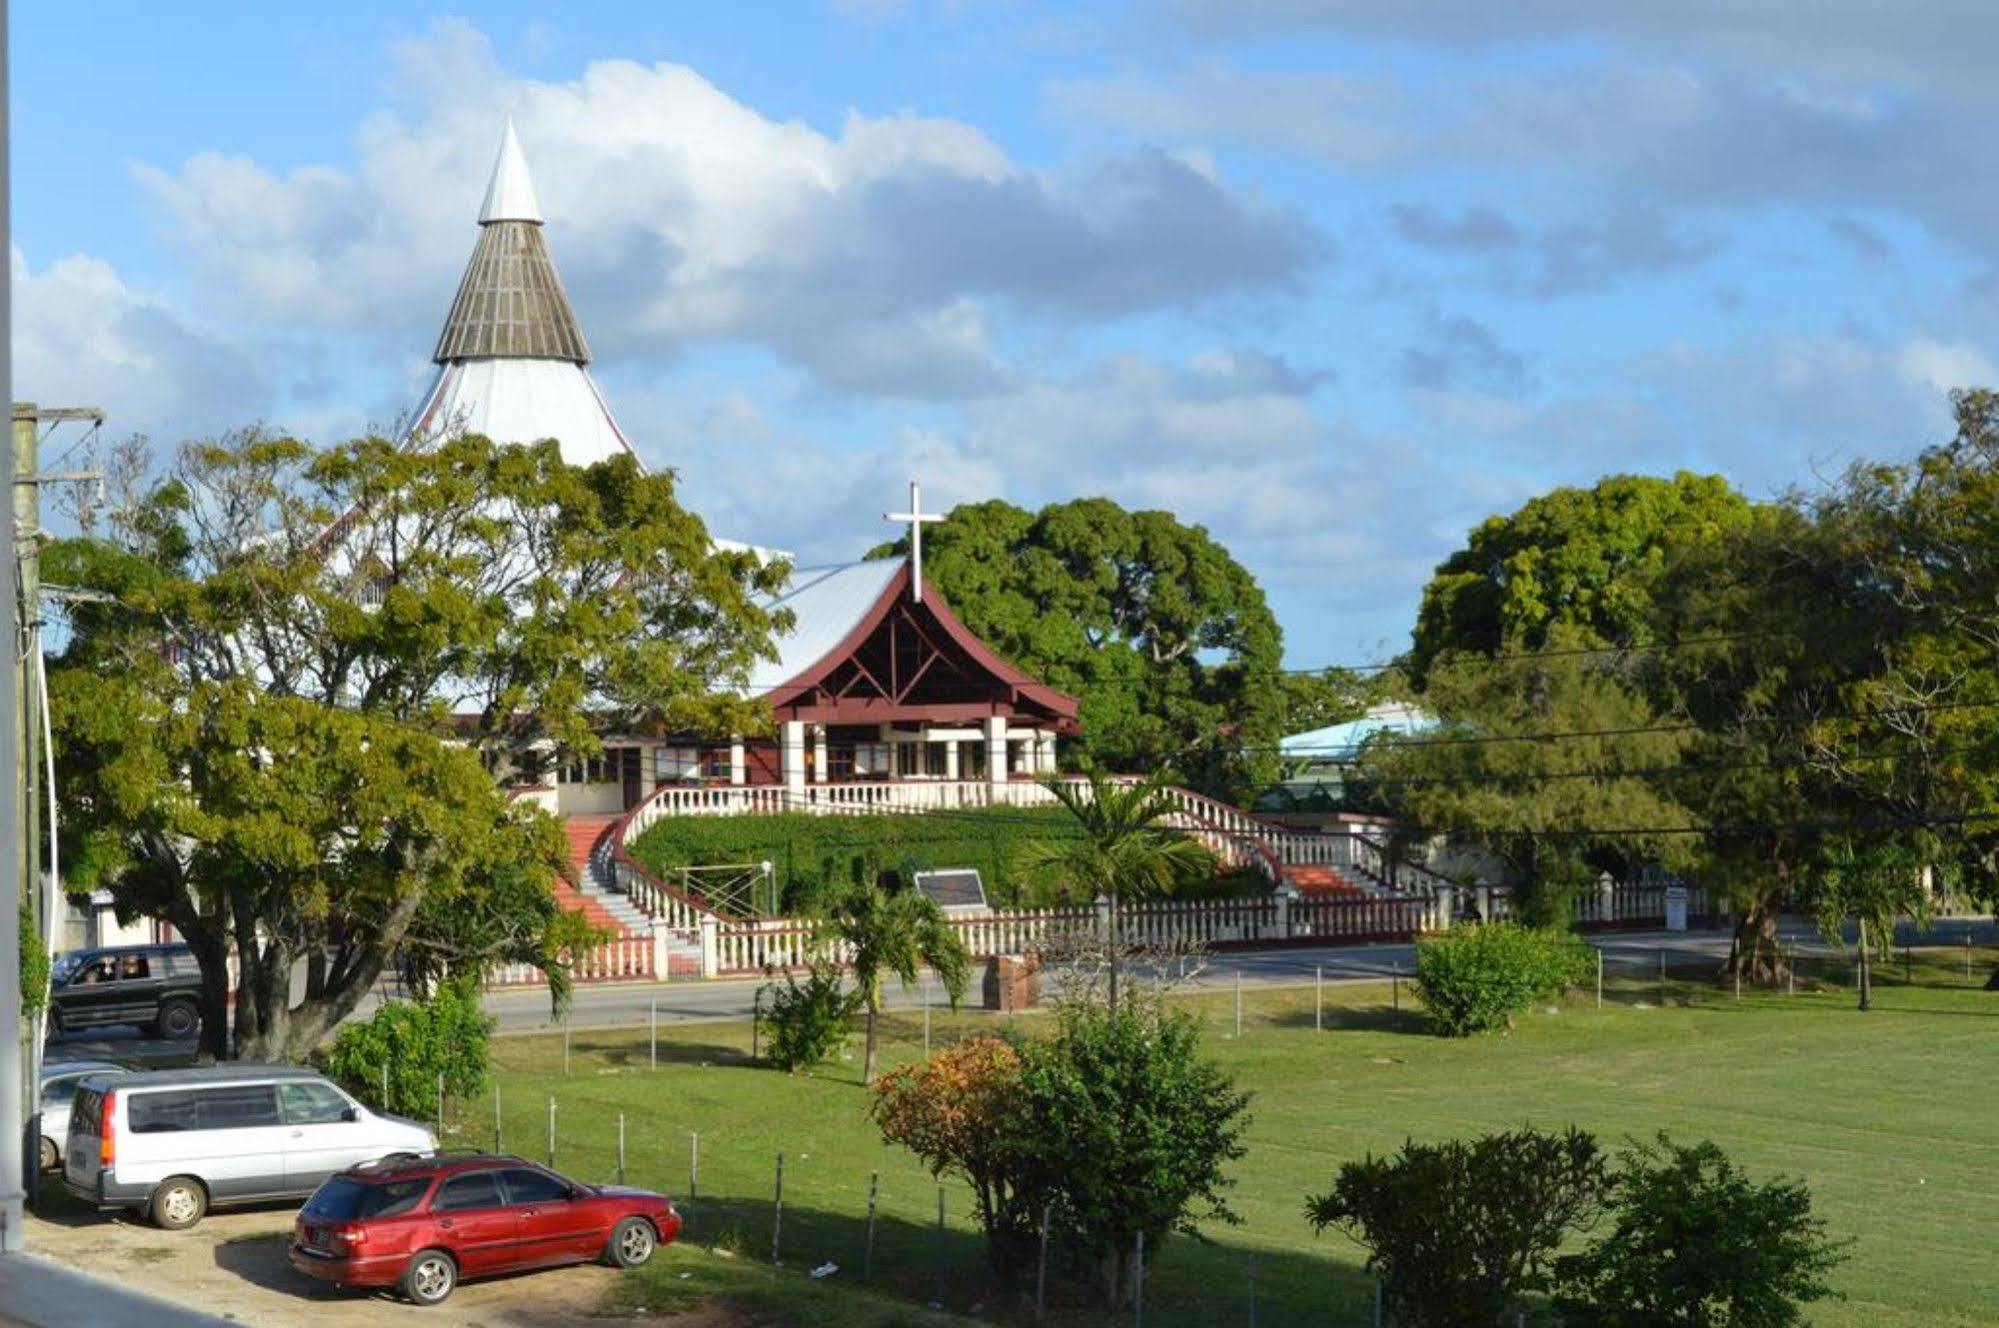 Loumaile Lodge Nuku'alofa Exterior photo